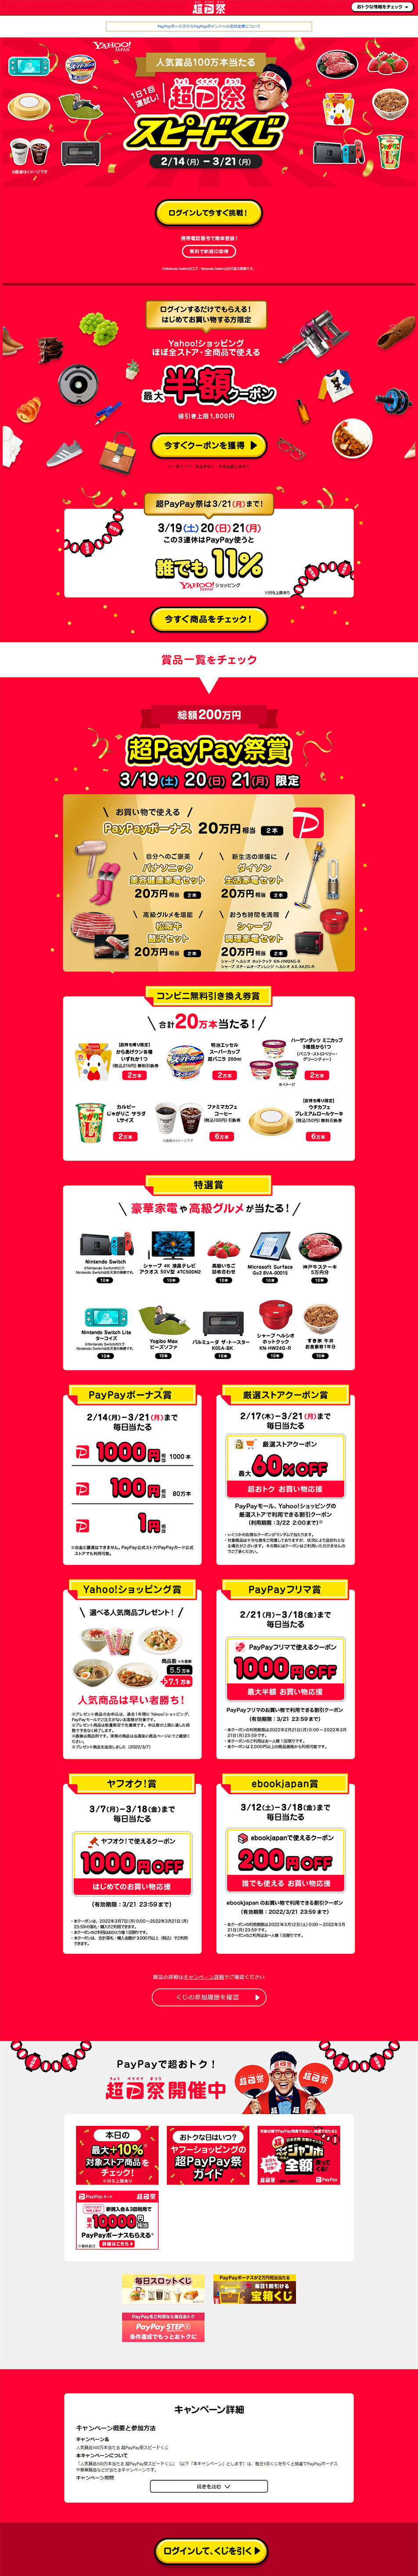 超PayPay祭スピードくじ_pc_1